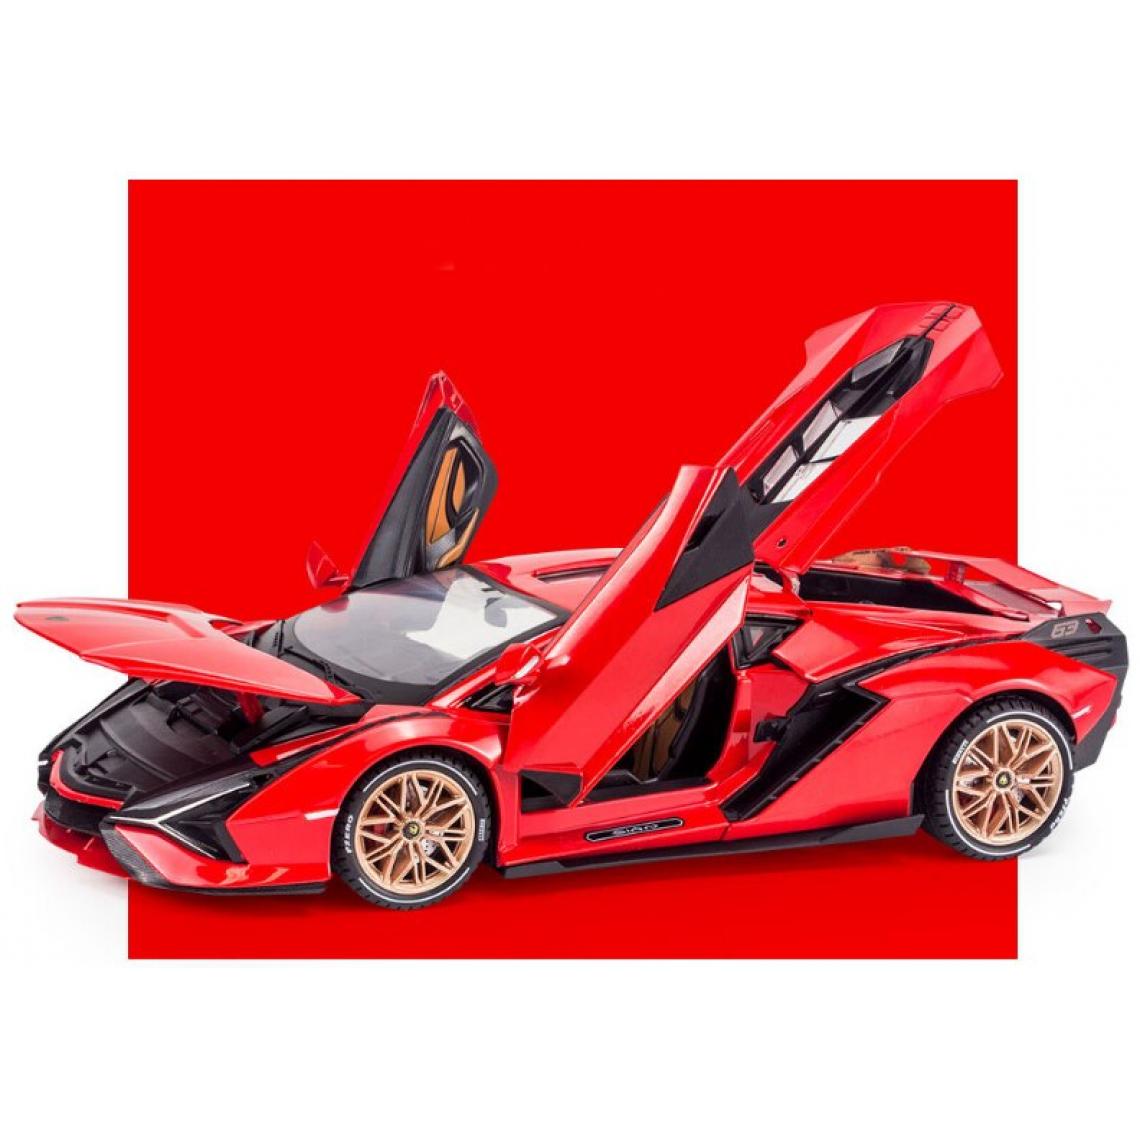 Universal - 1: 18 Échelle grande taille Lamborghini Sina alliage sport voiture moulée sous pression jouet modèle de voiture miniature modèle de voiture cadeaux pour les enfants |(Rouge) - Voitures